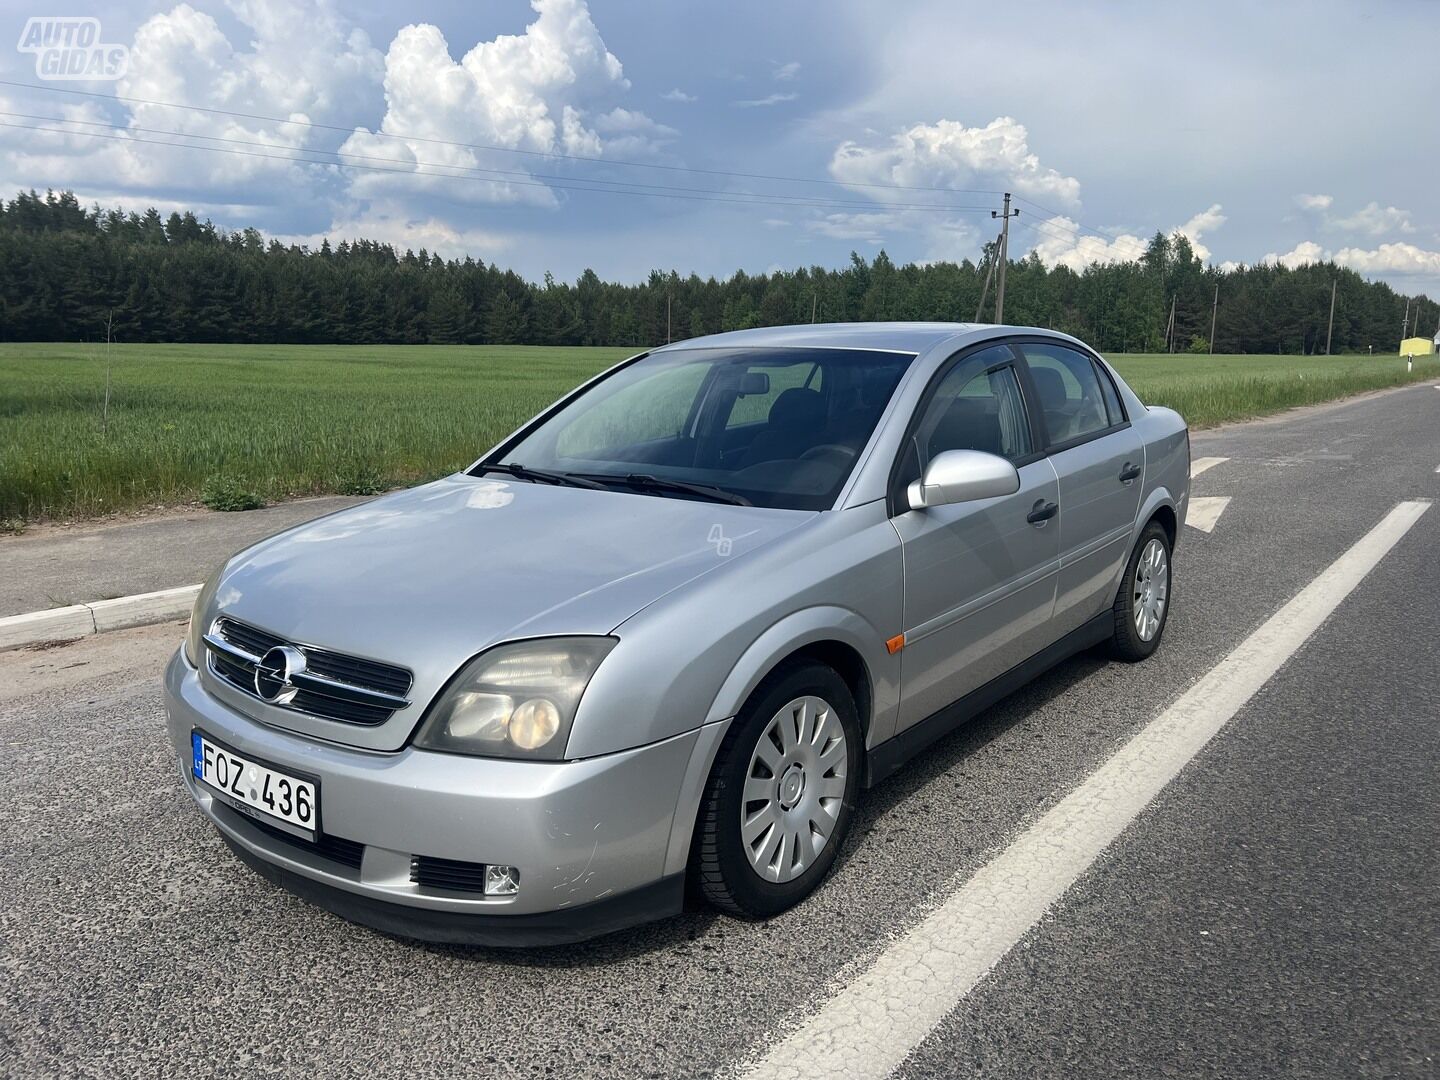 Opel Vectra C DTI Base 2002 y